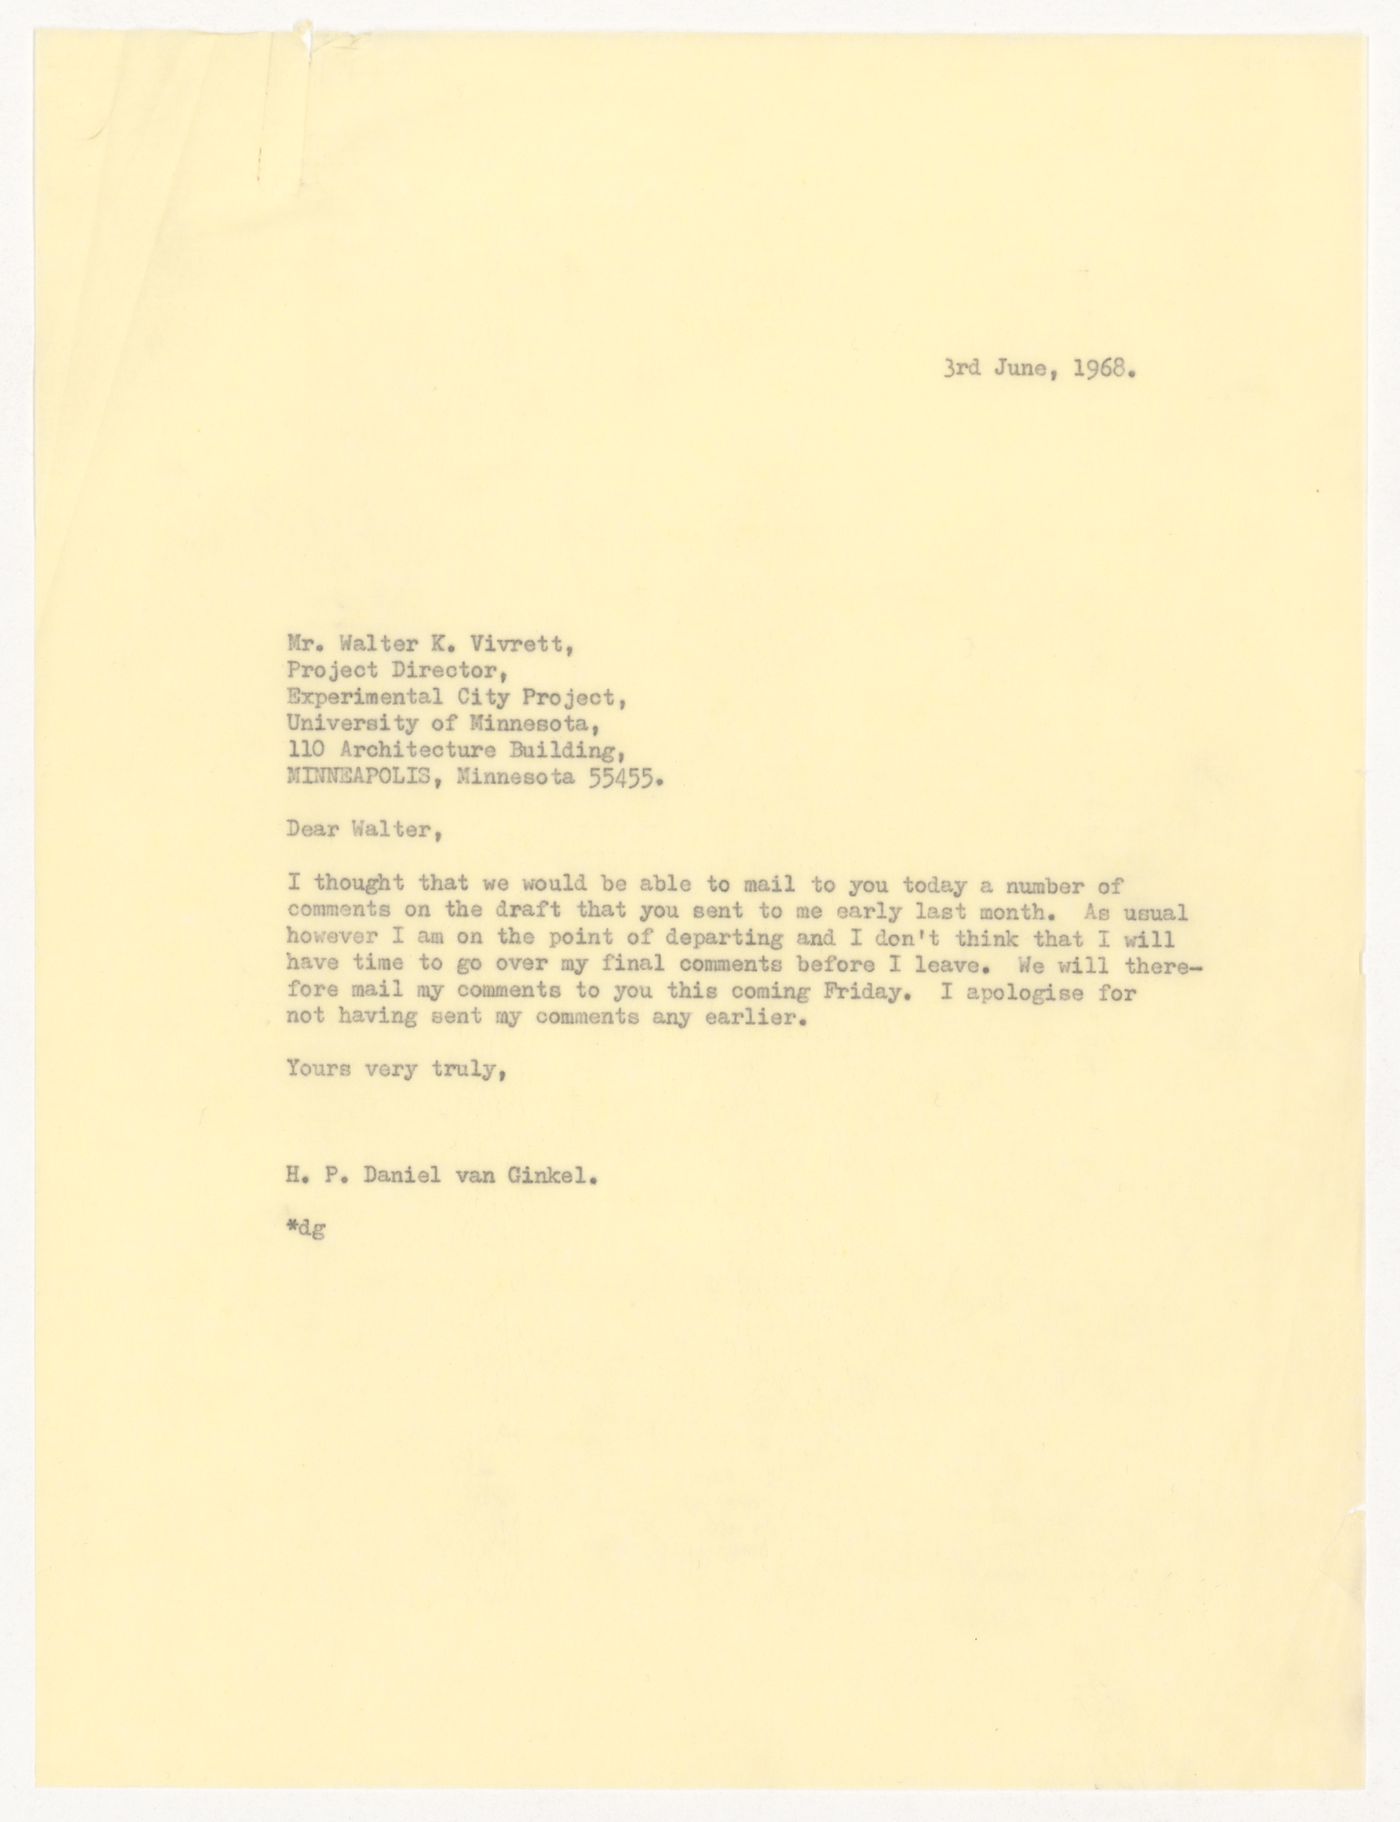 Letter from H. P. Daniel van Ginkel to Walter K. Vivrett for Experimental City Project